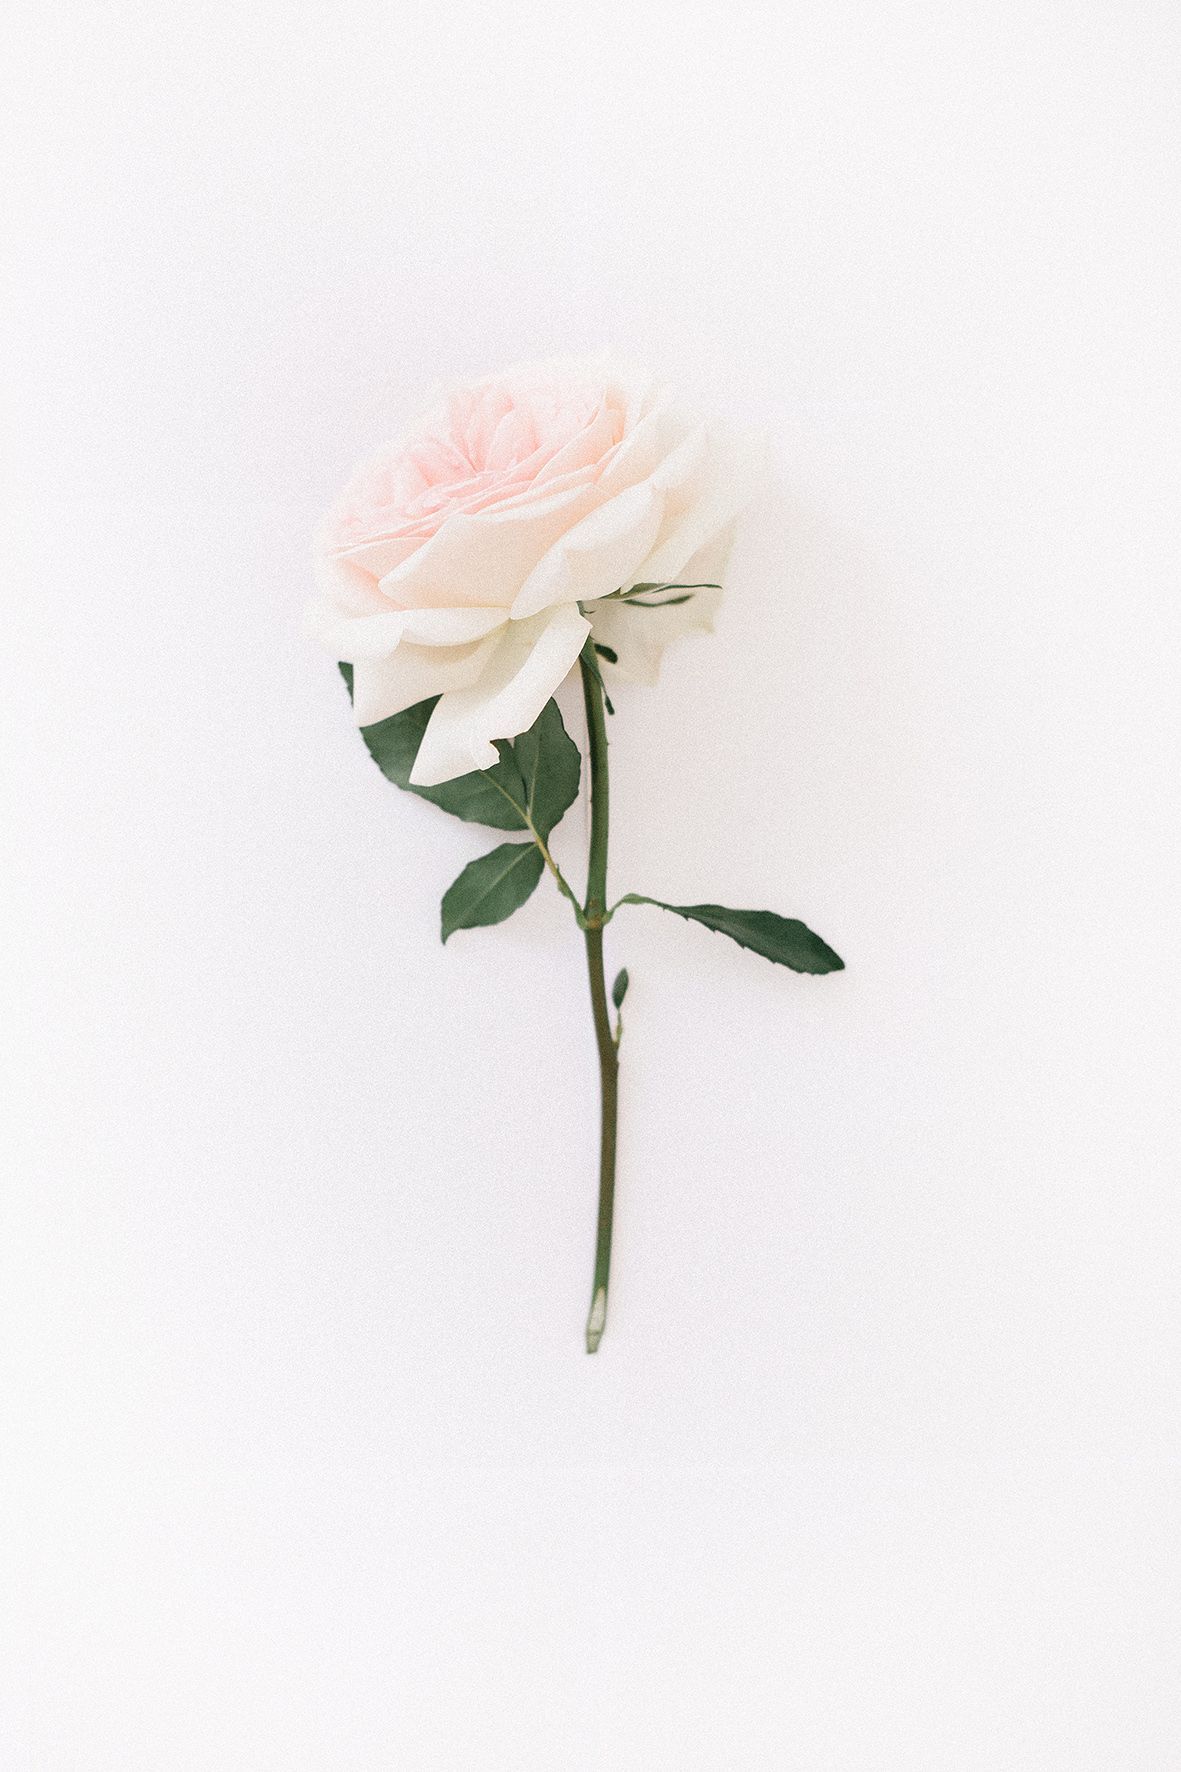 صور ورد جميل صور ورد رومانسى Hd 2020 معلومات عن الورد صورميكس